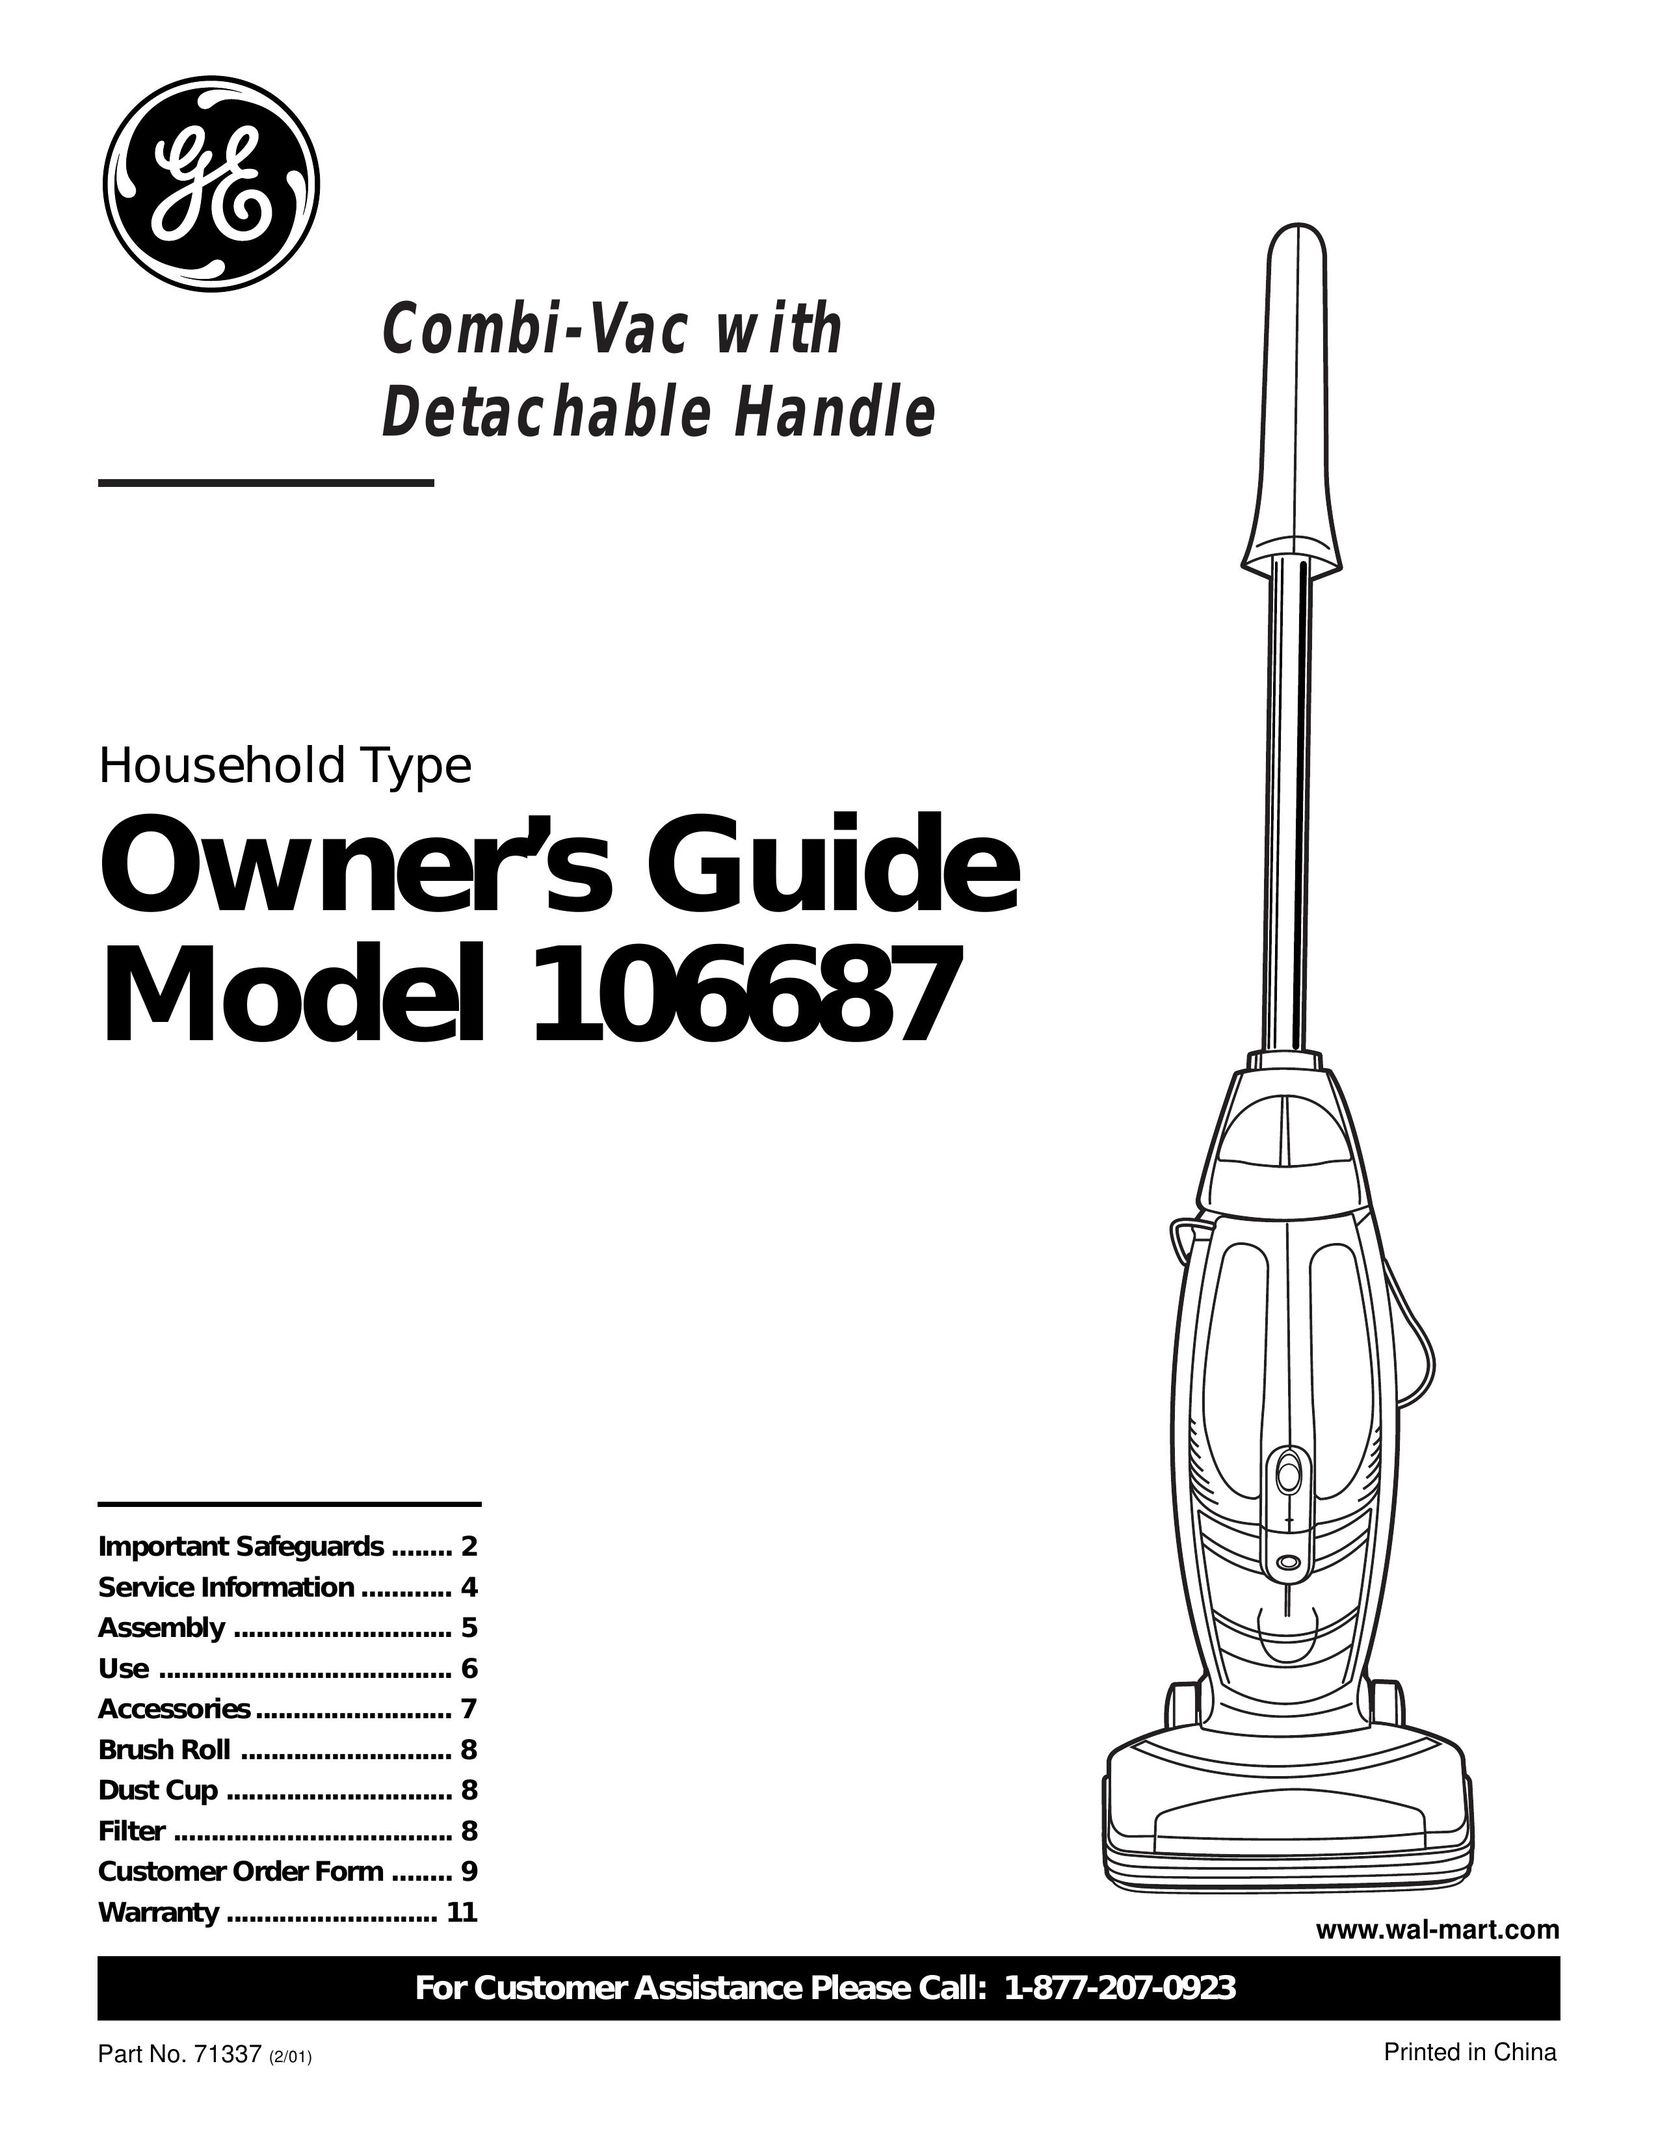 GE 106687 Vacuum Cleaner User Manual